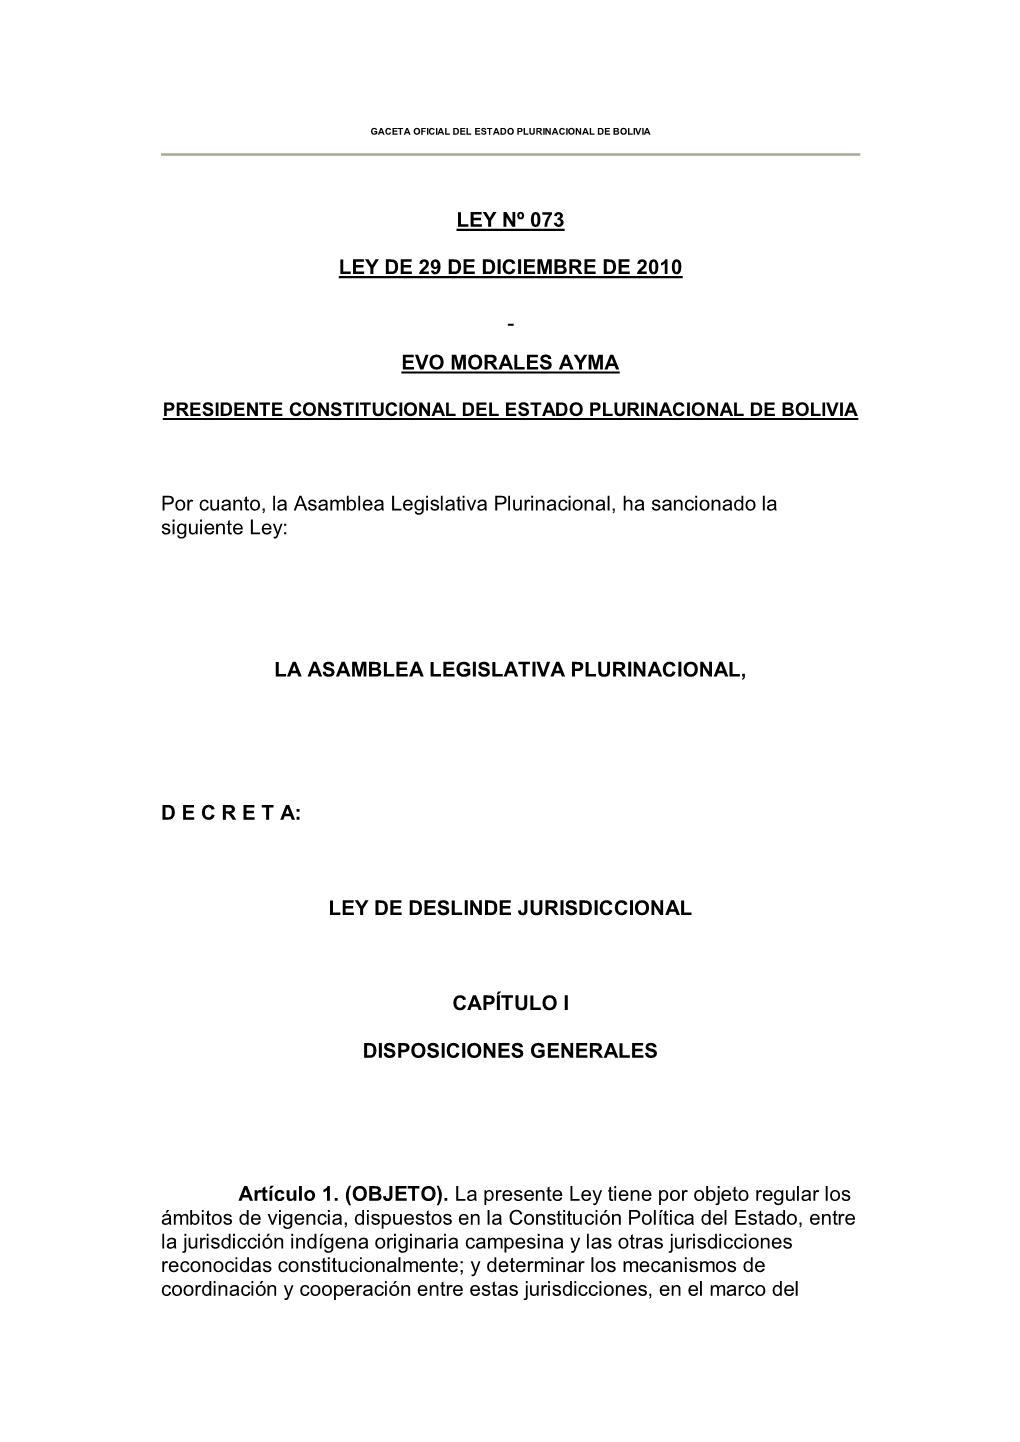 Ley De Deslinde Jurisdiccional Nº 073, Del 29 De Diciembre De 2010